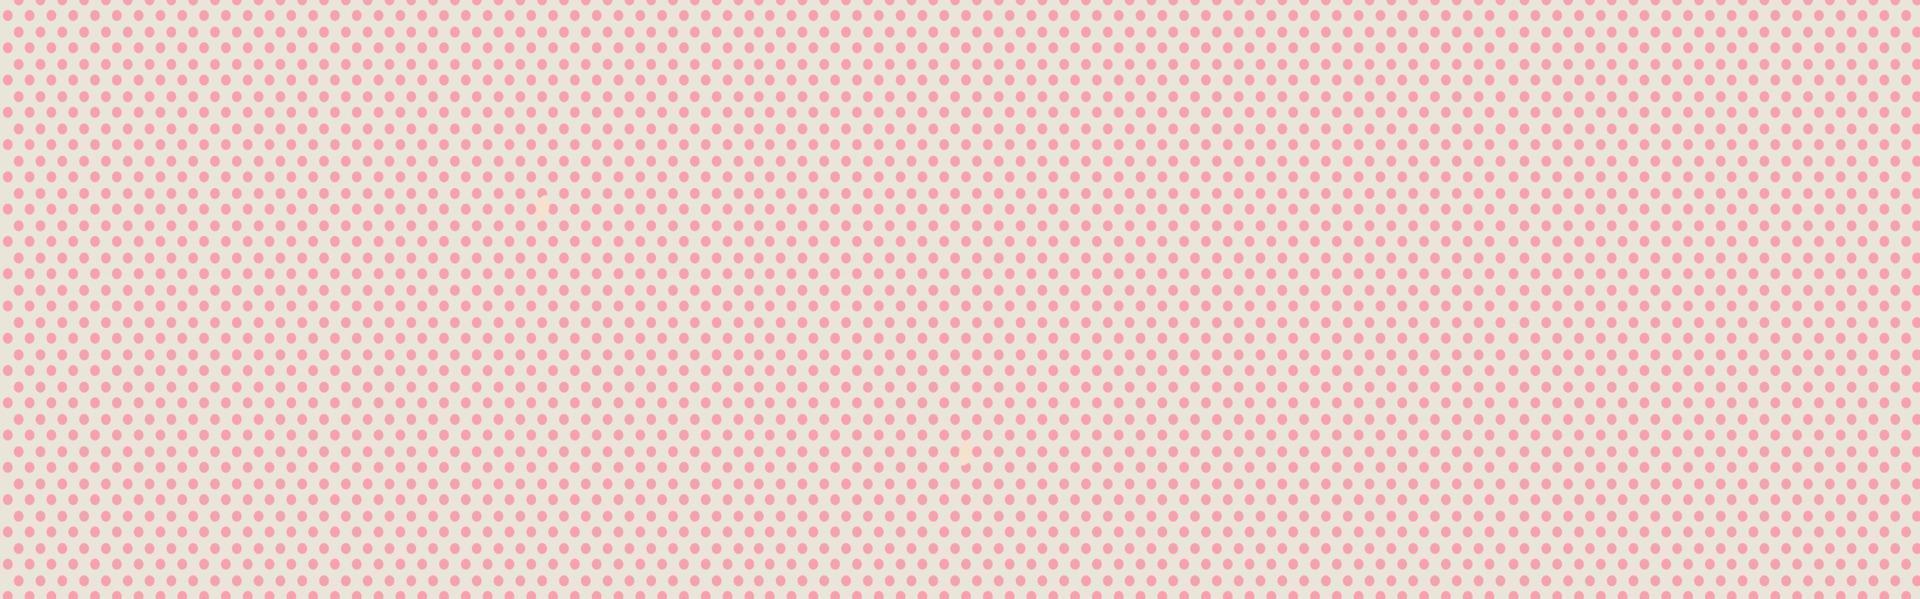 patrón de pastel de vector transparente con lunares de color rosa oscuro sobre un fondo de color rosa bebé dulce.